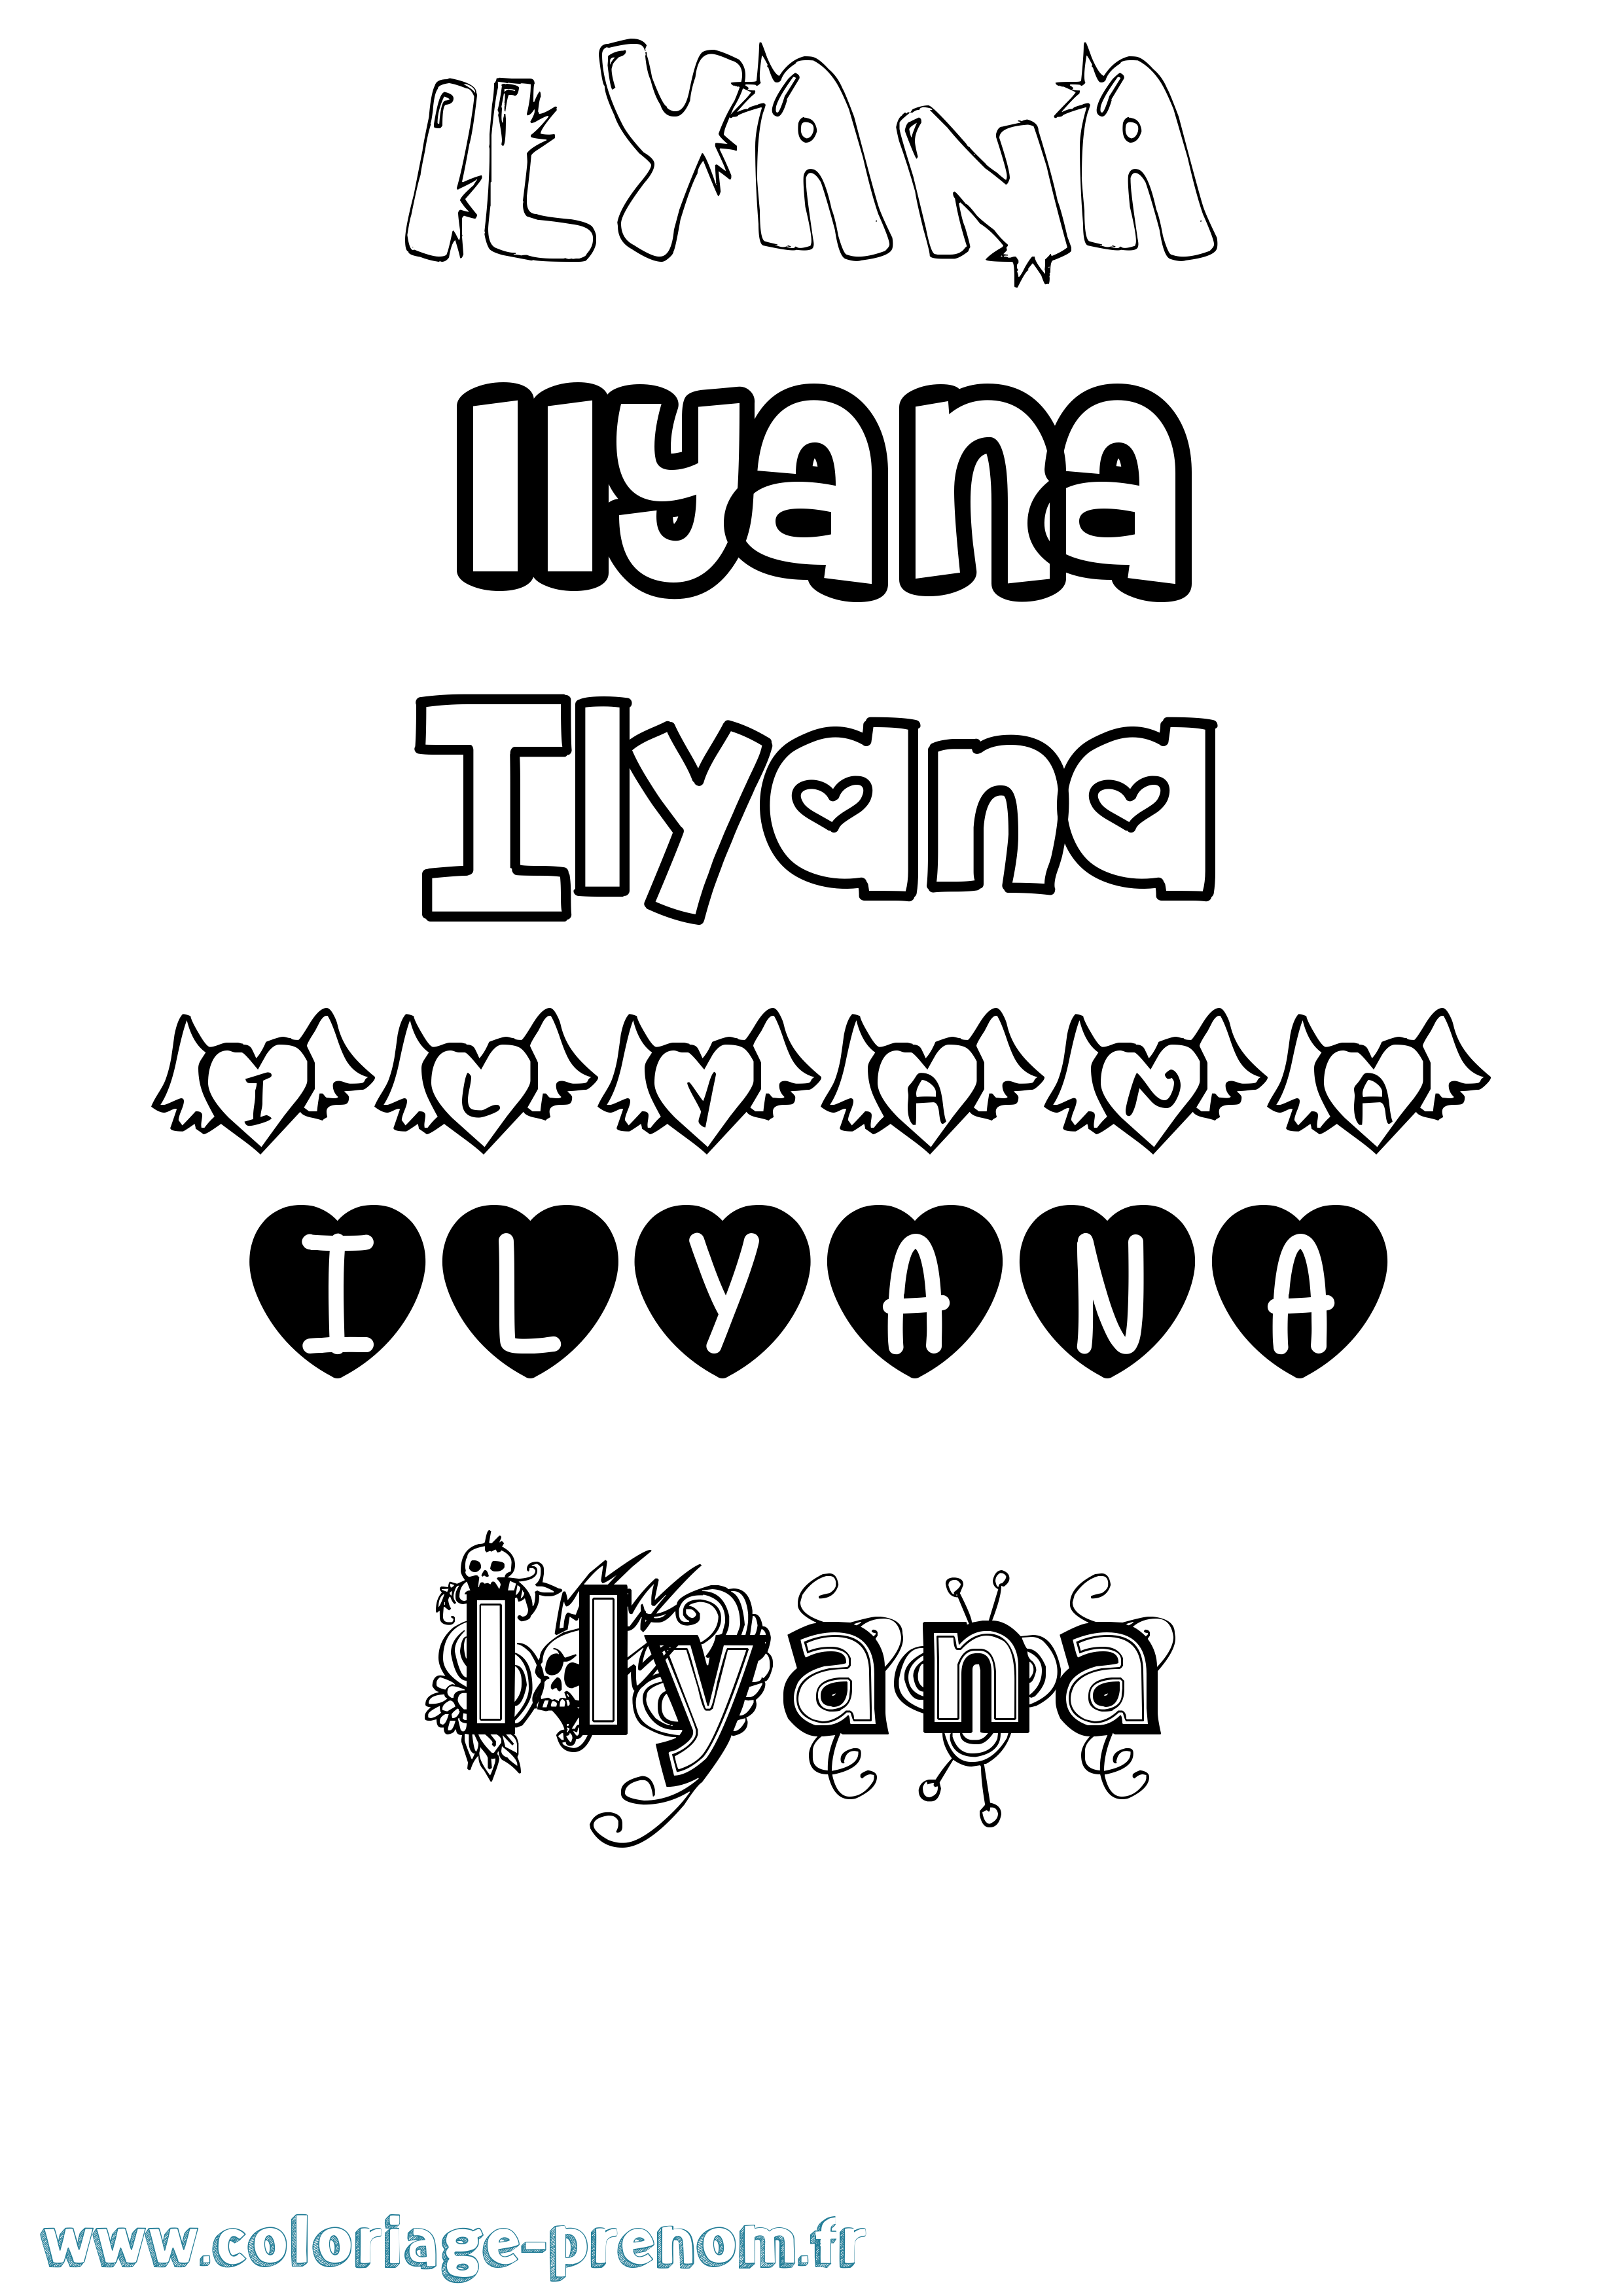 Coloriage prénom Ilyana Girly